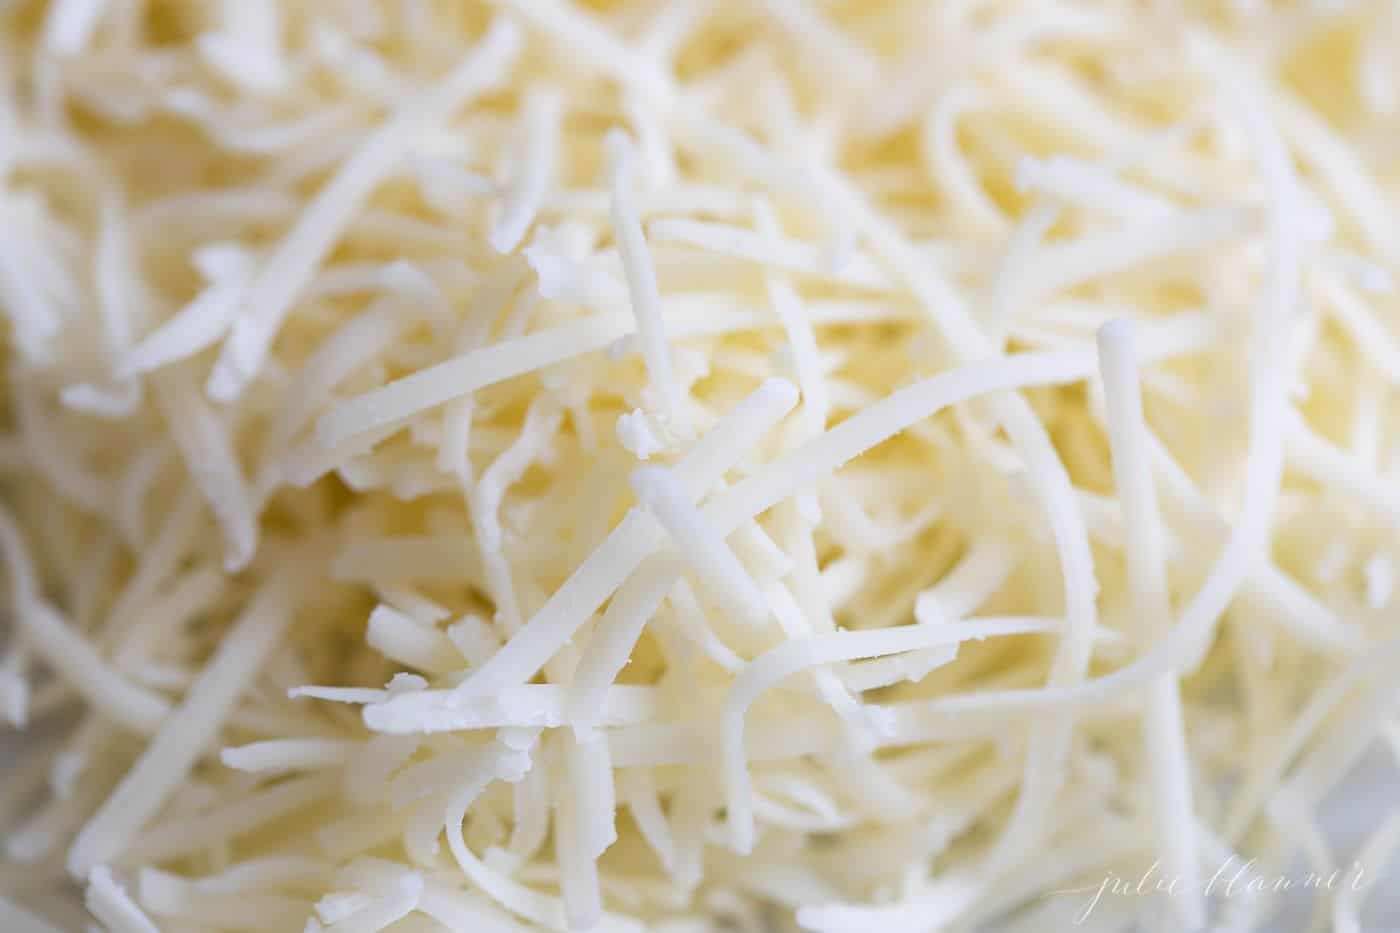 Freshly shredded white cheddar cheese.